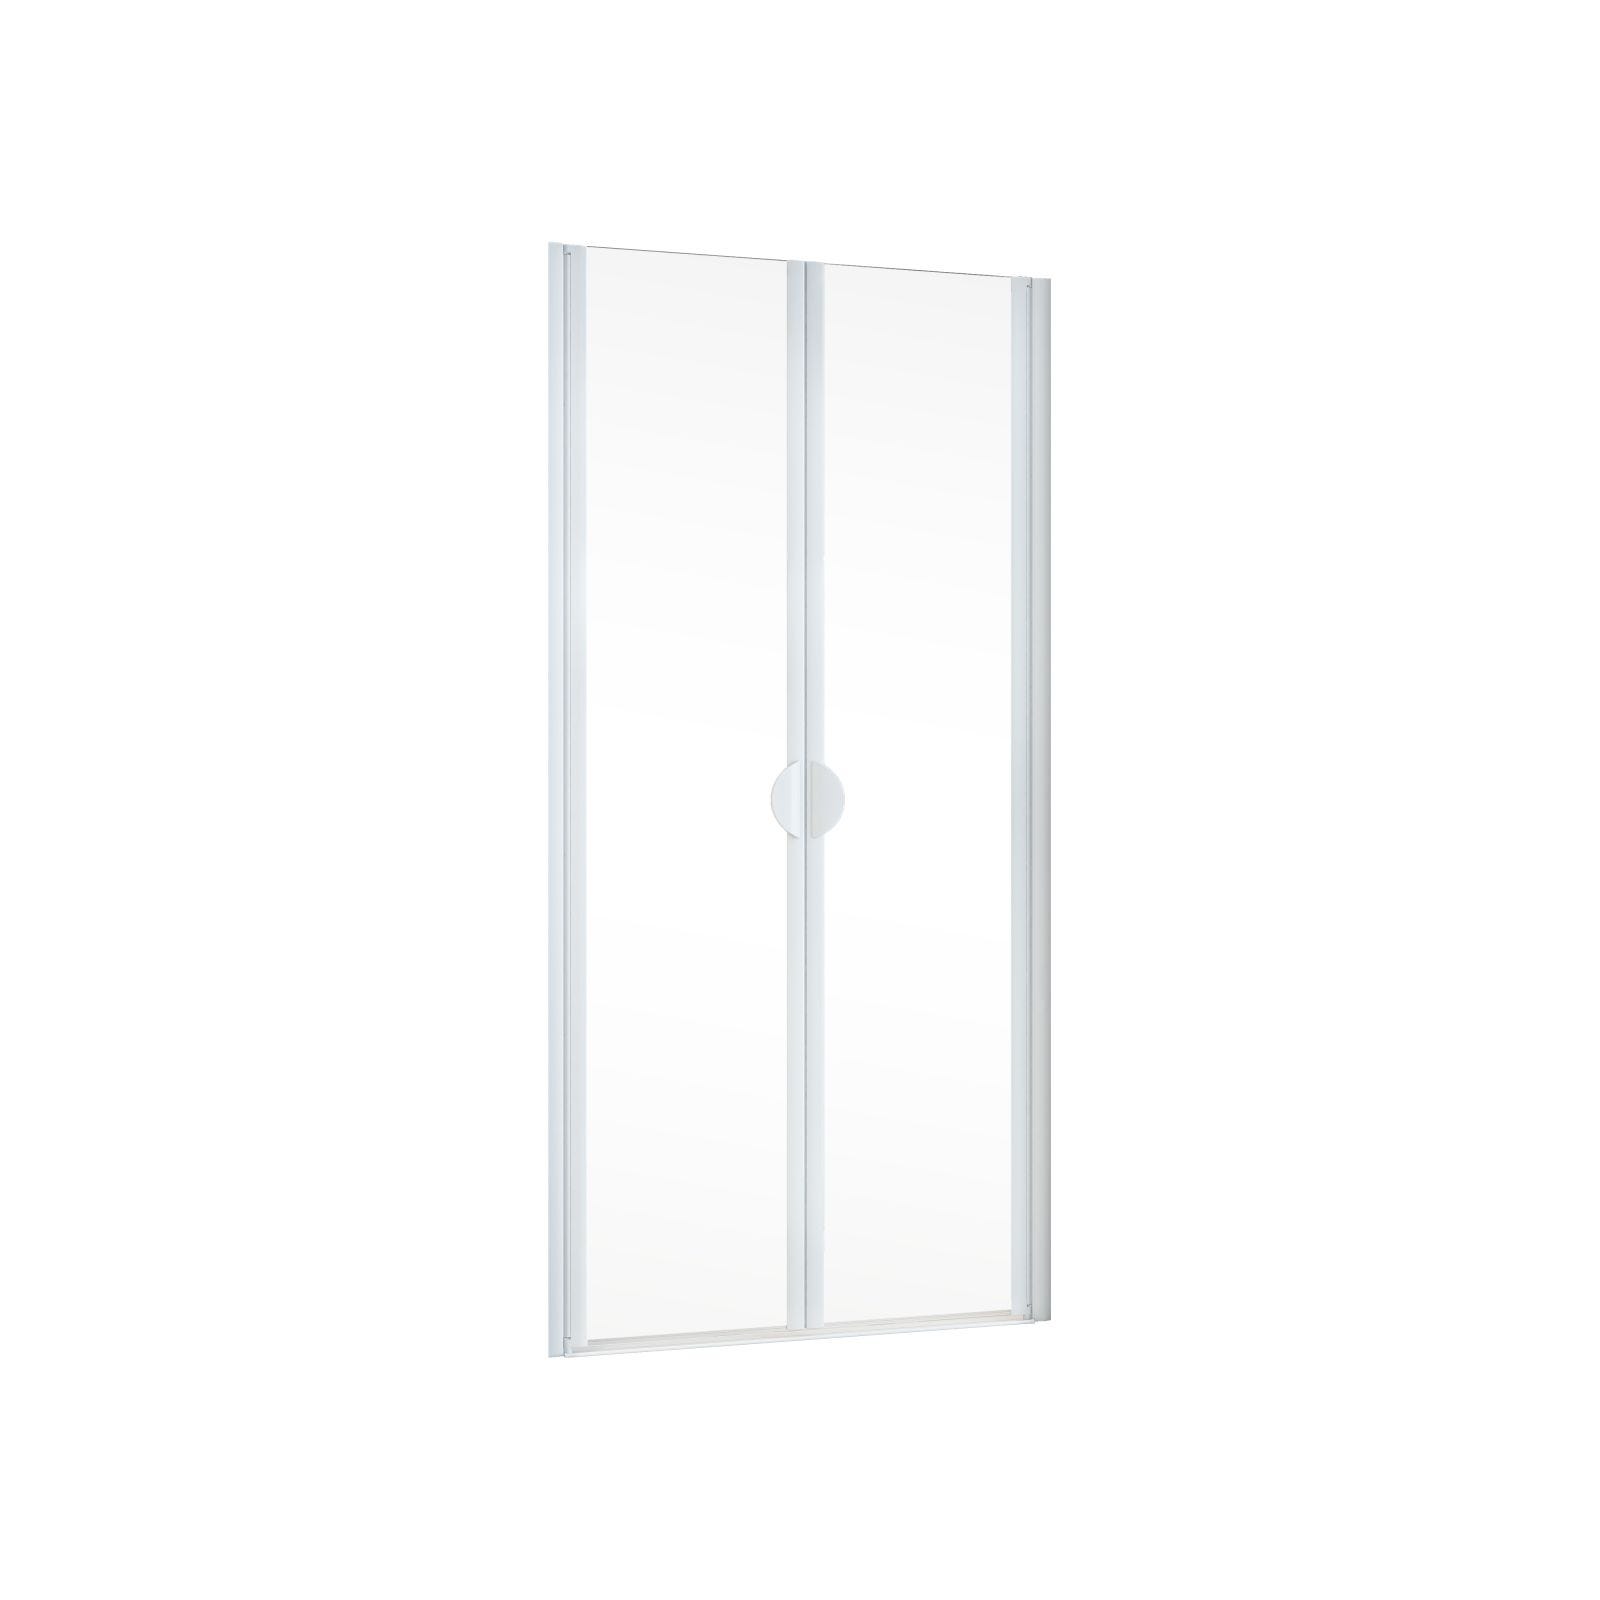 Schulte porte de douche 2 battants, porte de douche battante en niche, 80 x 180 cm, verre 5 mm transparent, blanc, traitement anticalcaire, Sunny 1